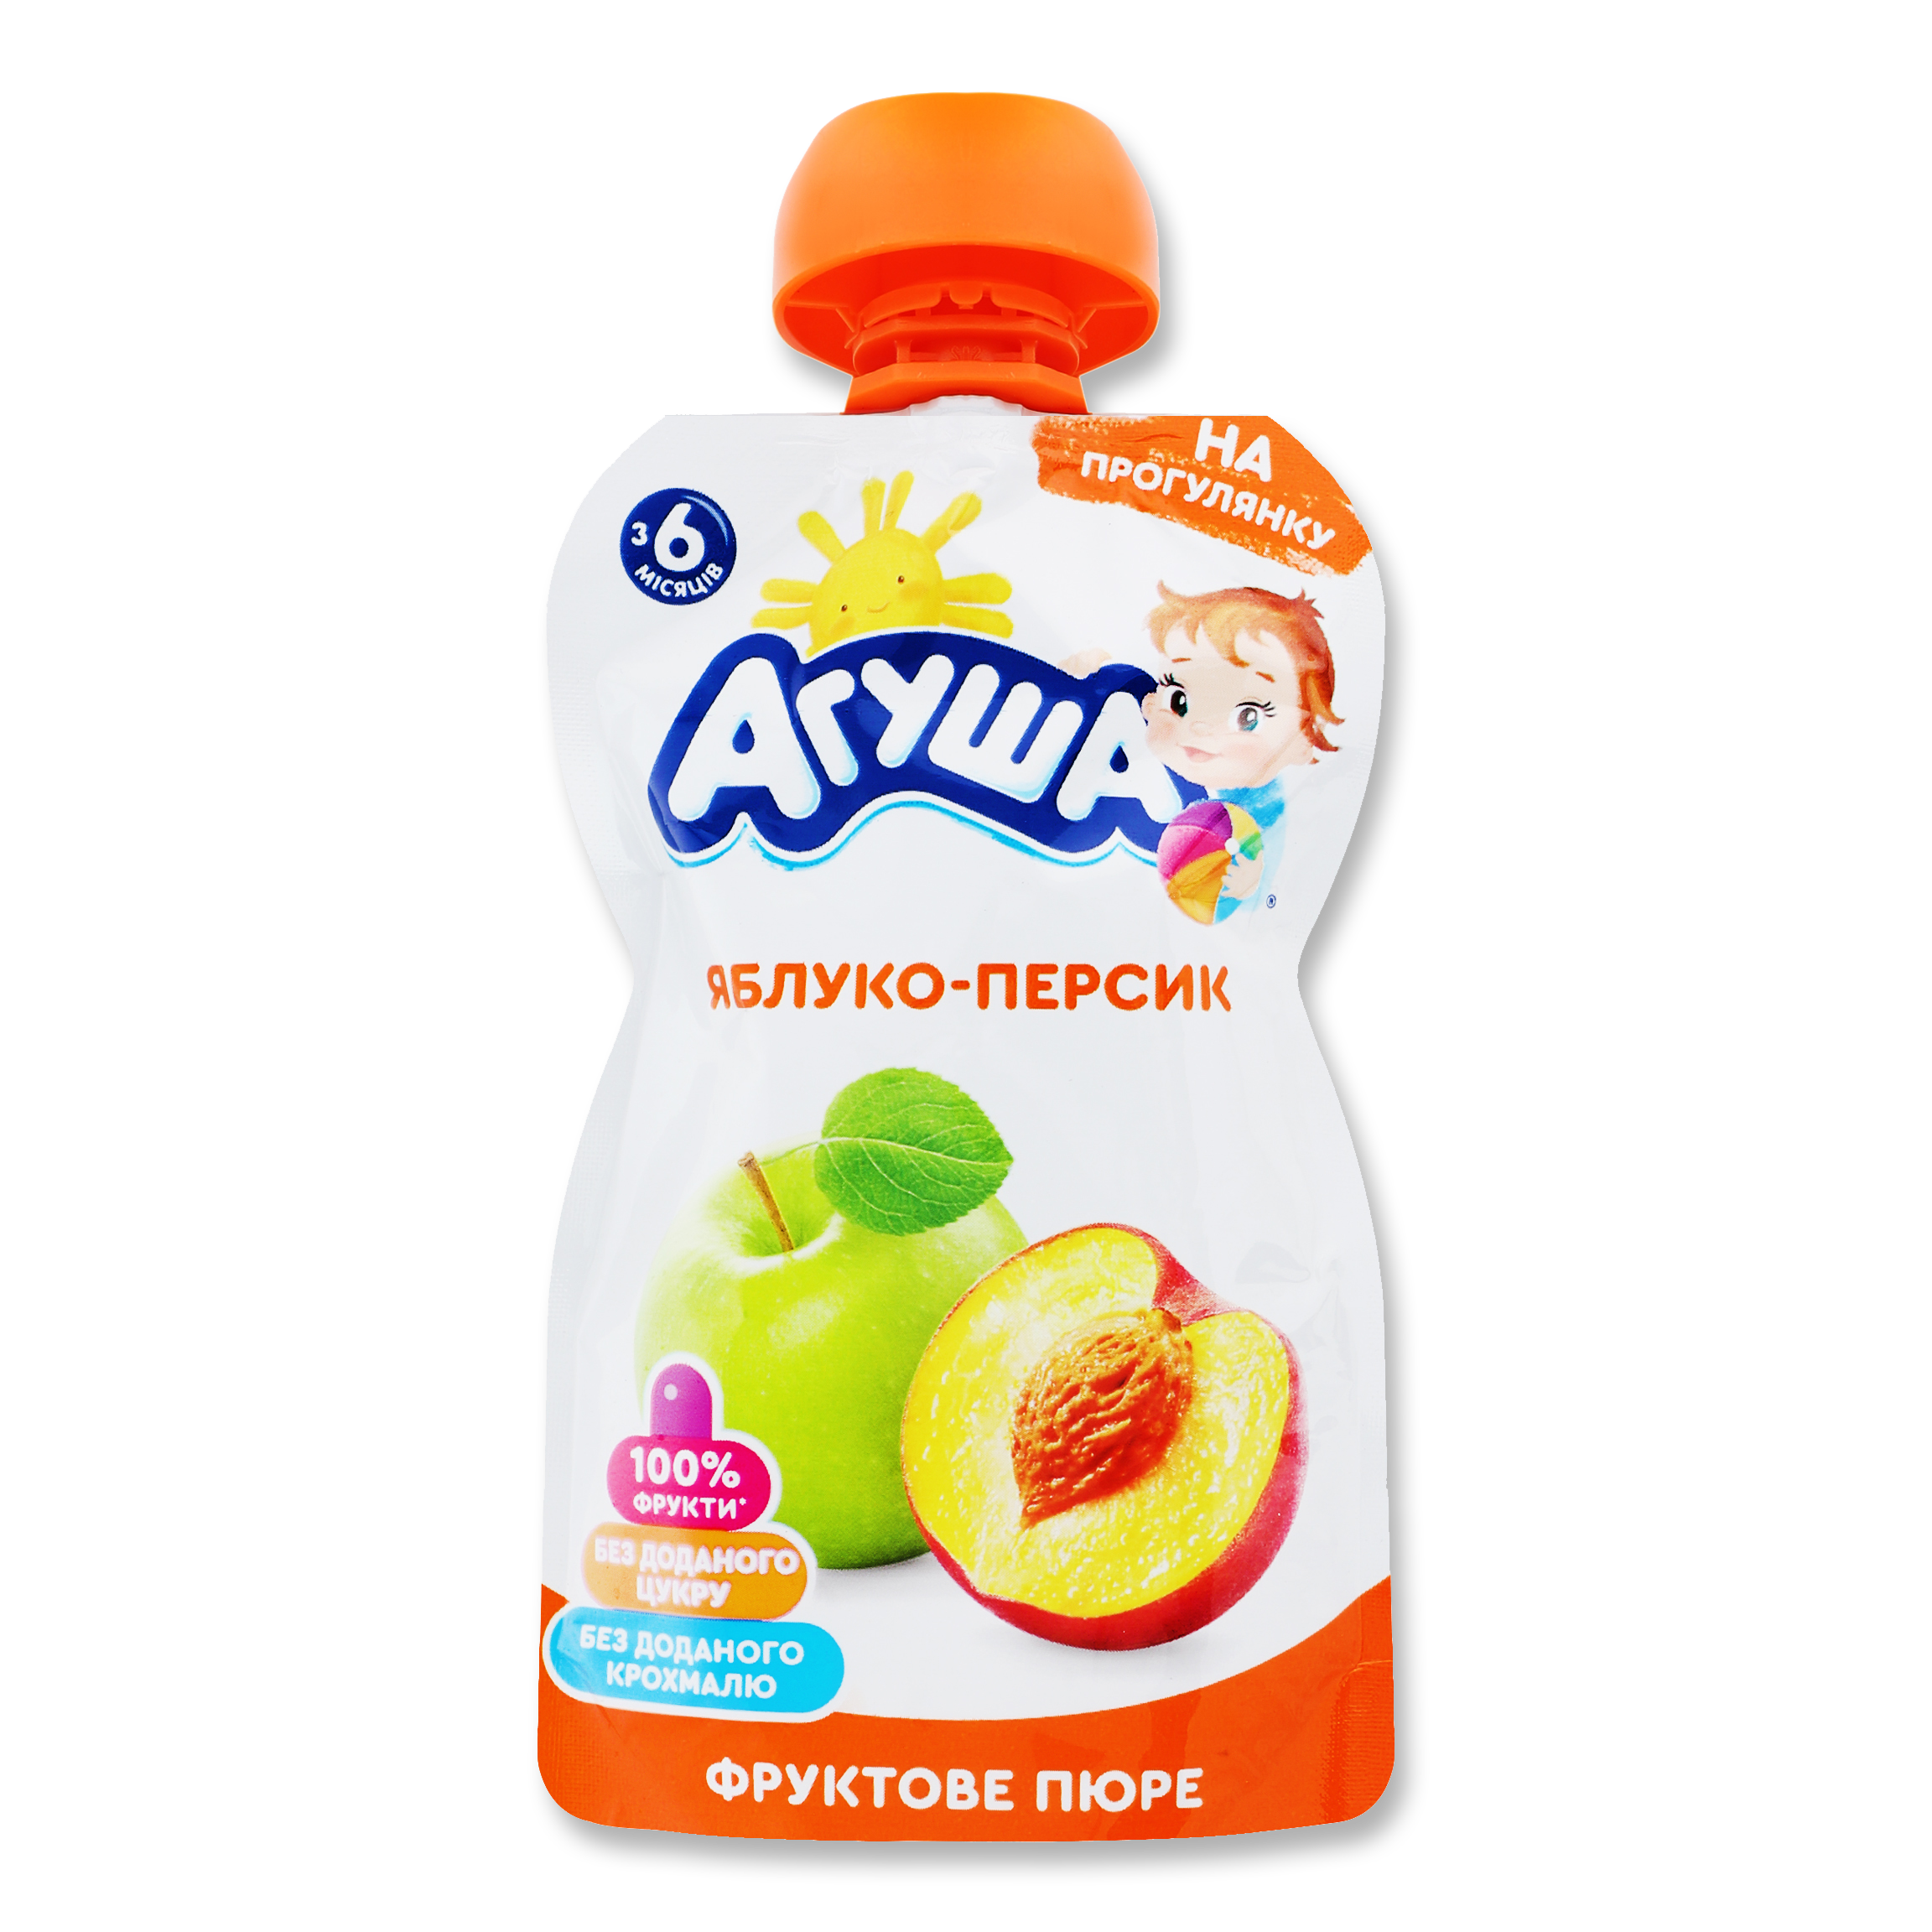 Agusha Puree for children apple-peach 90g